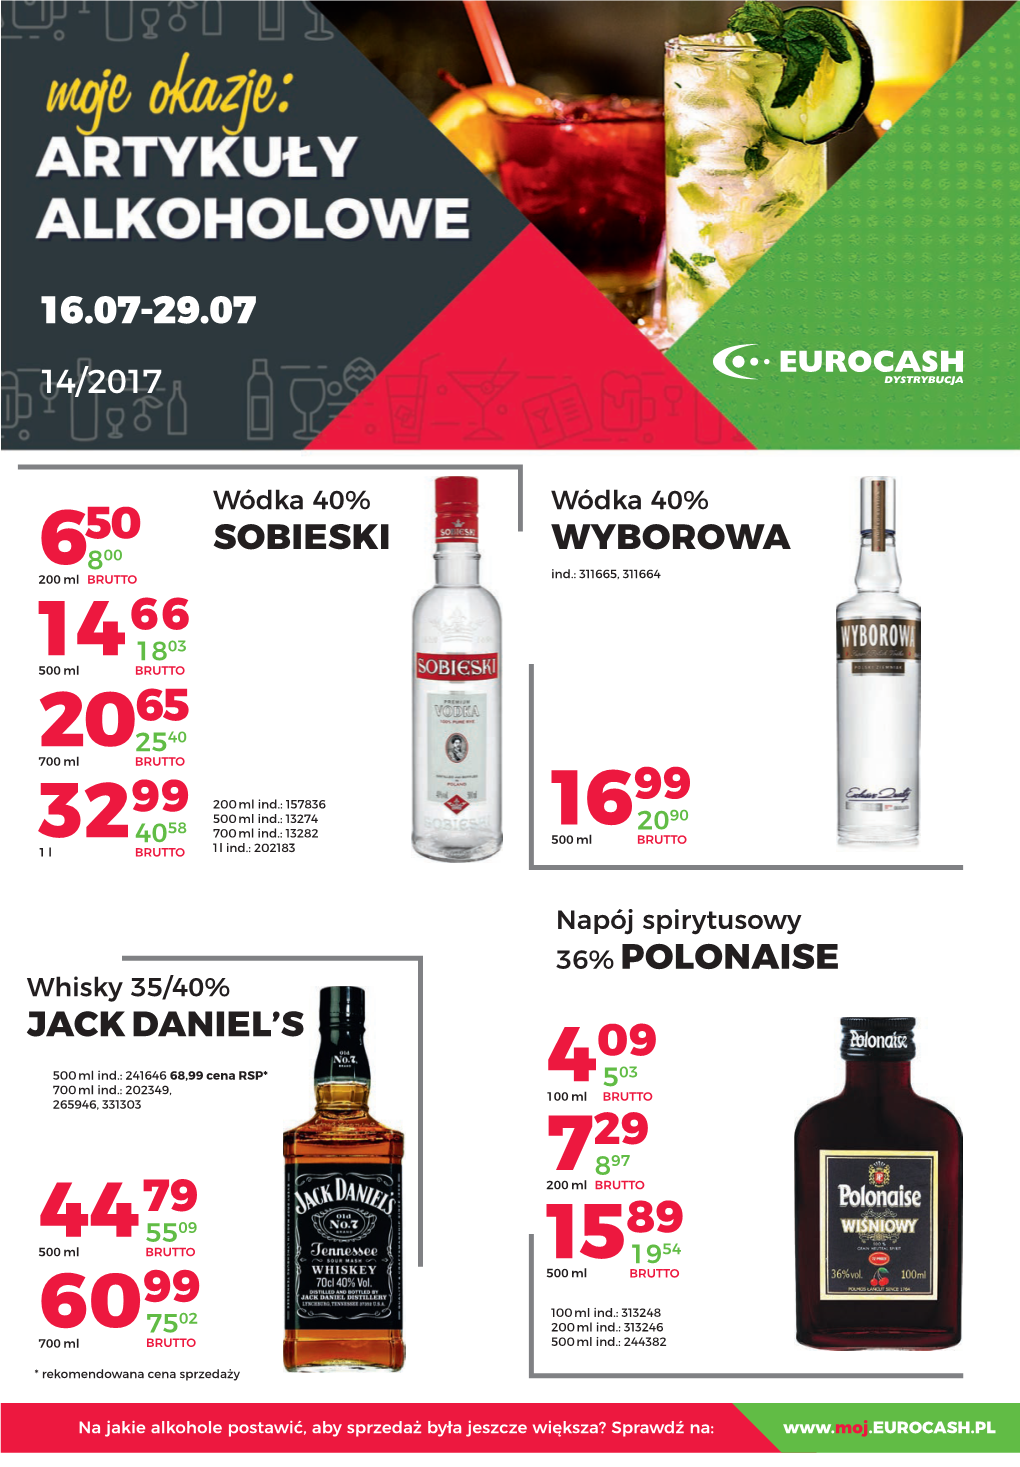 Sobieski Wyborowa Jack Daniel's 36% Polonaise